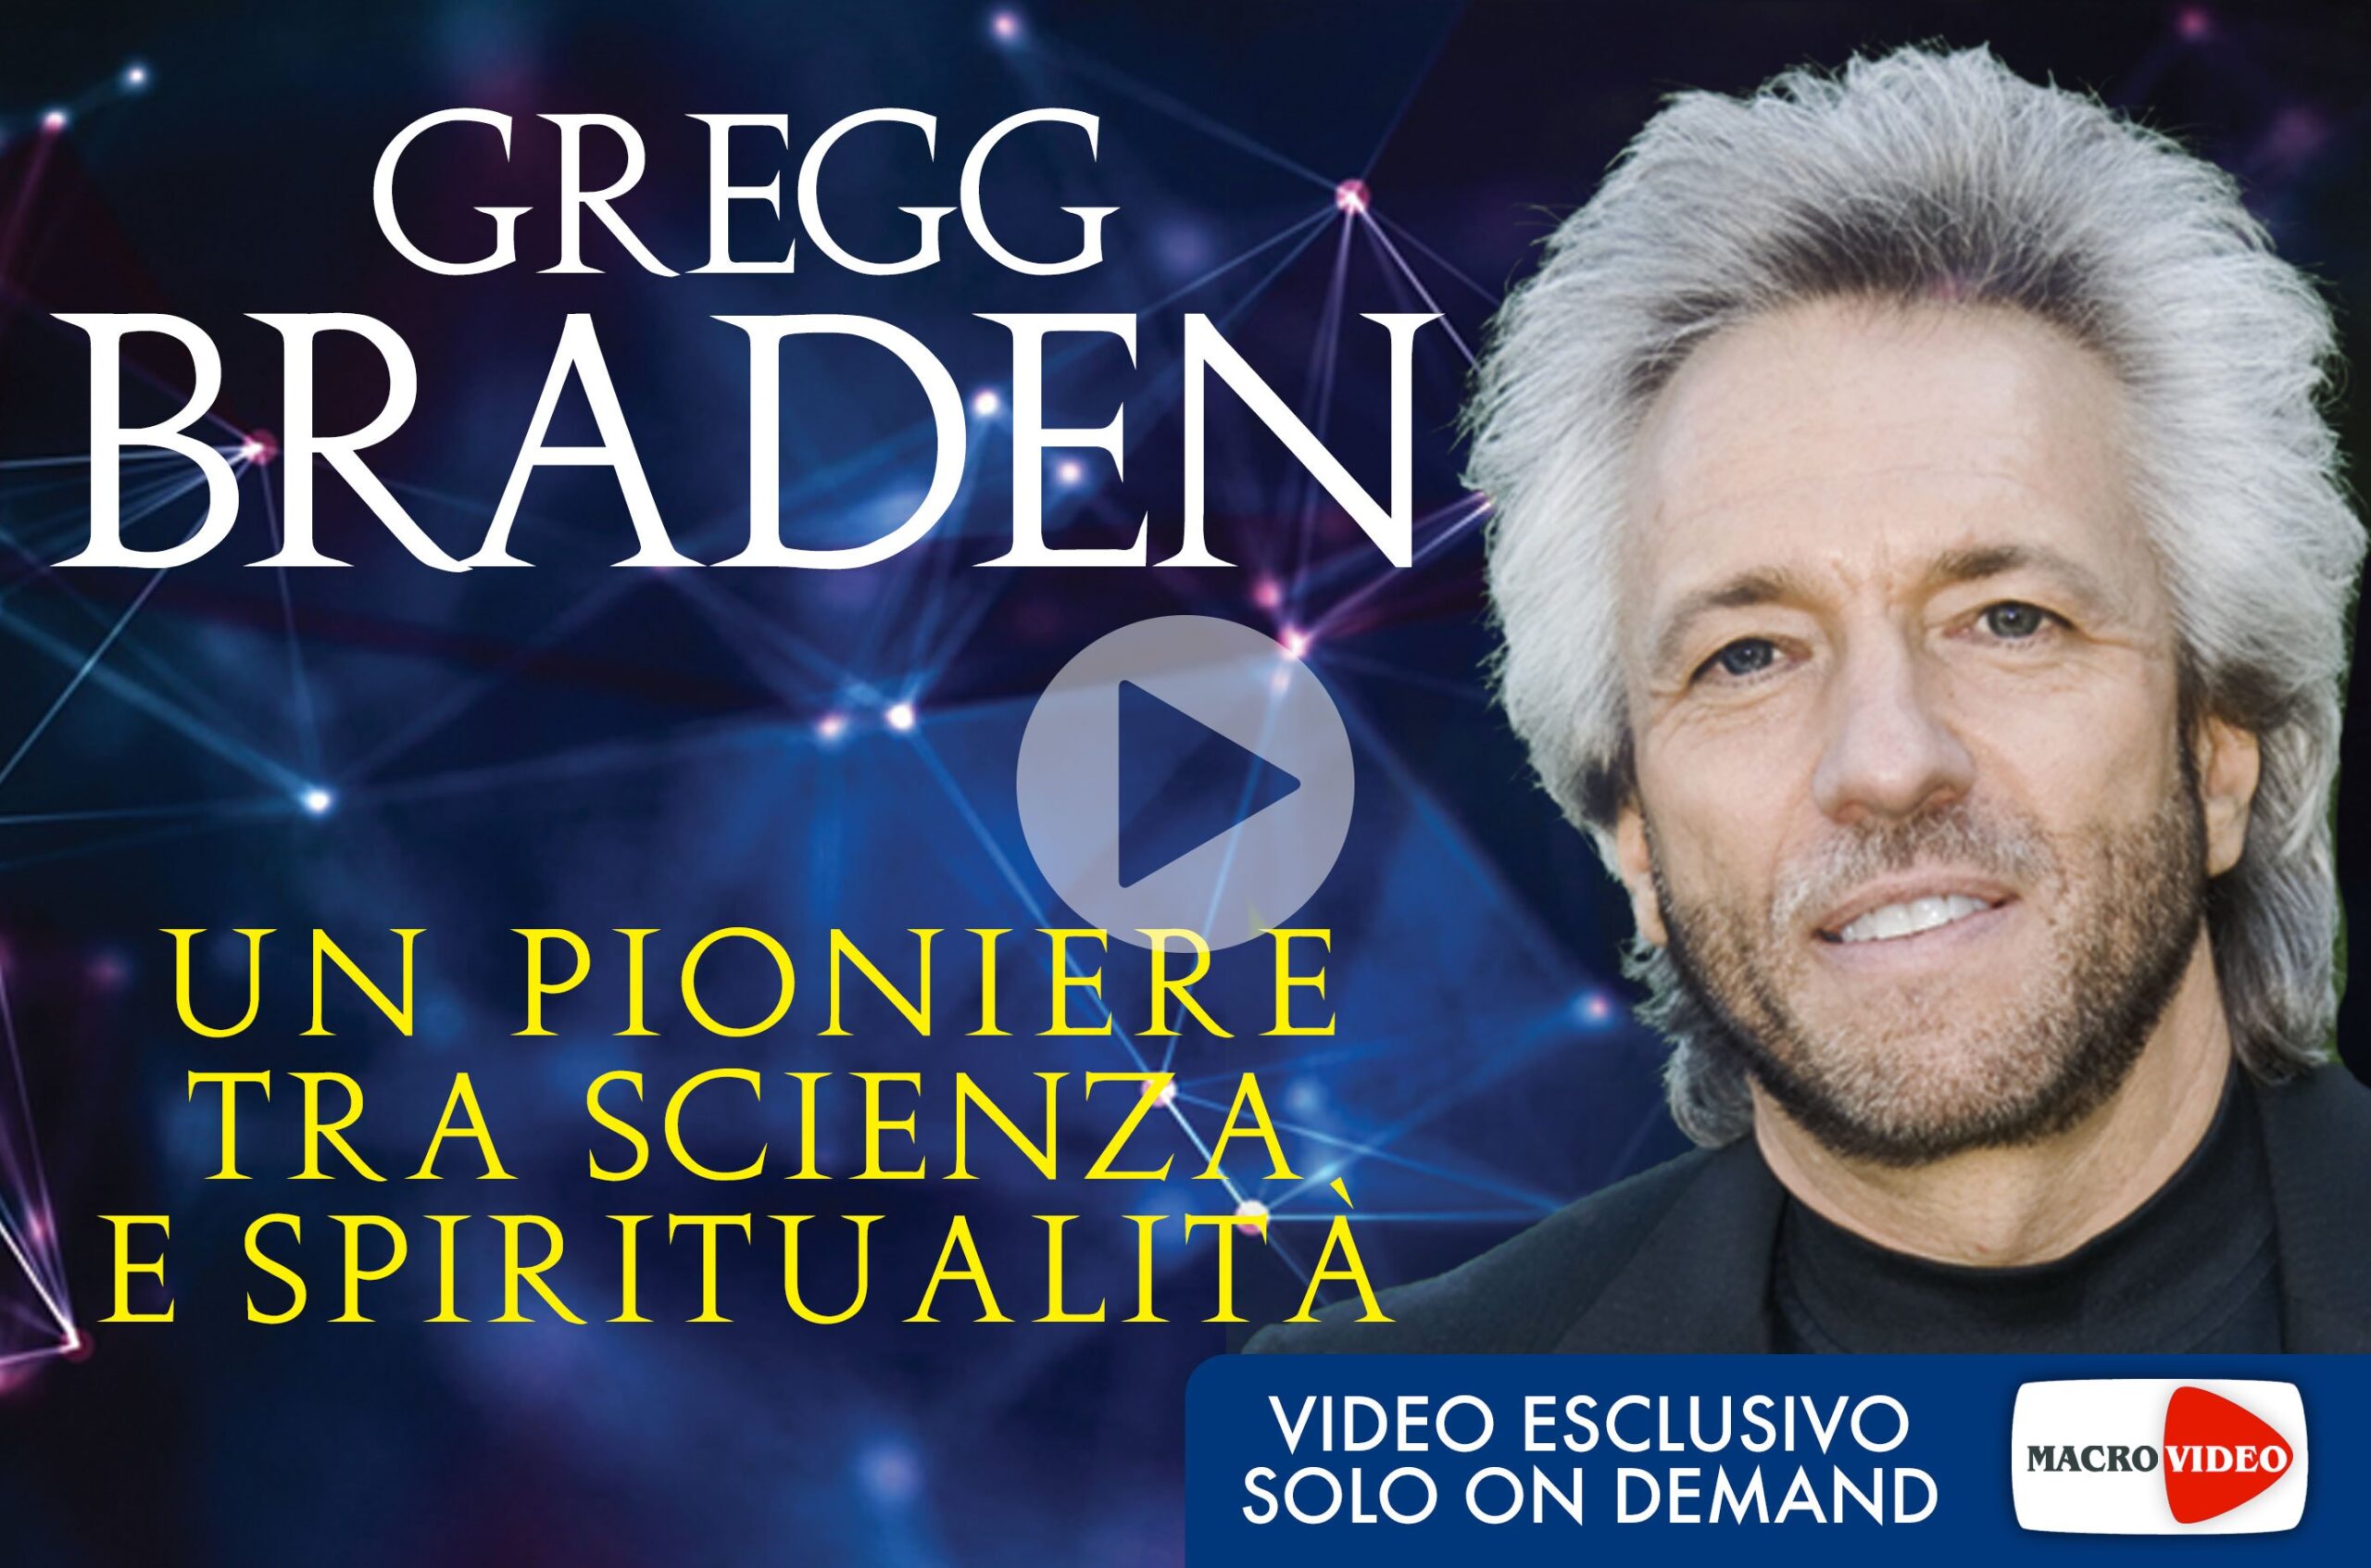 braden-un-pioniere-tra-scienza-e-spiritualita-download-copertina-300dpi